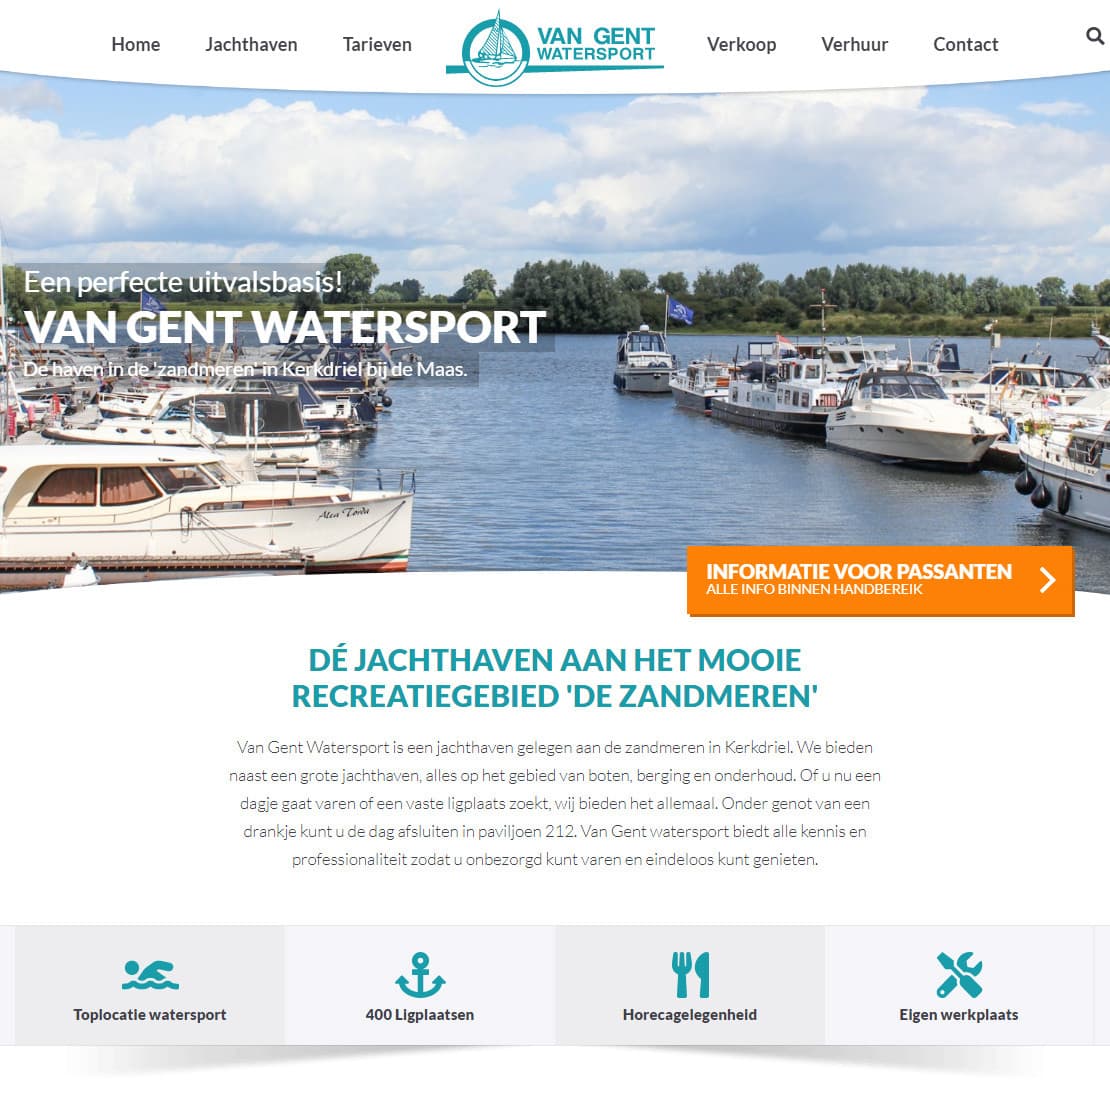 Van Gent Watersport